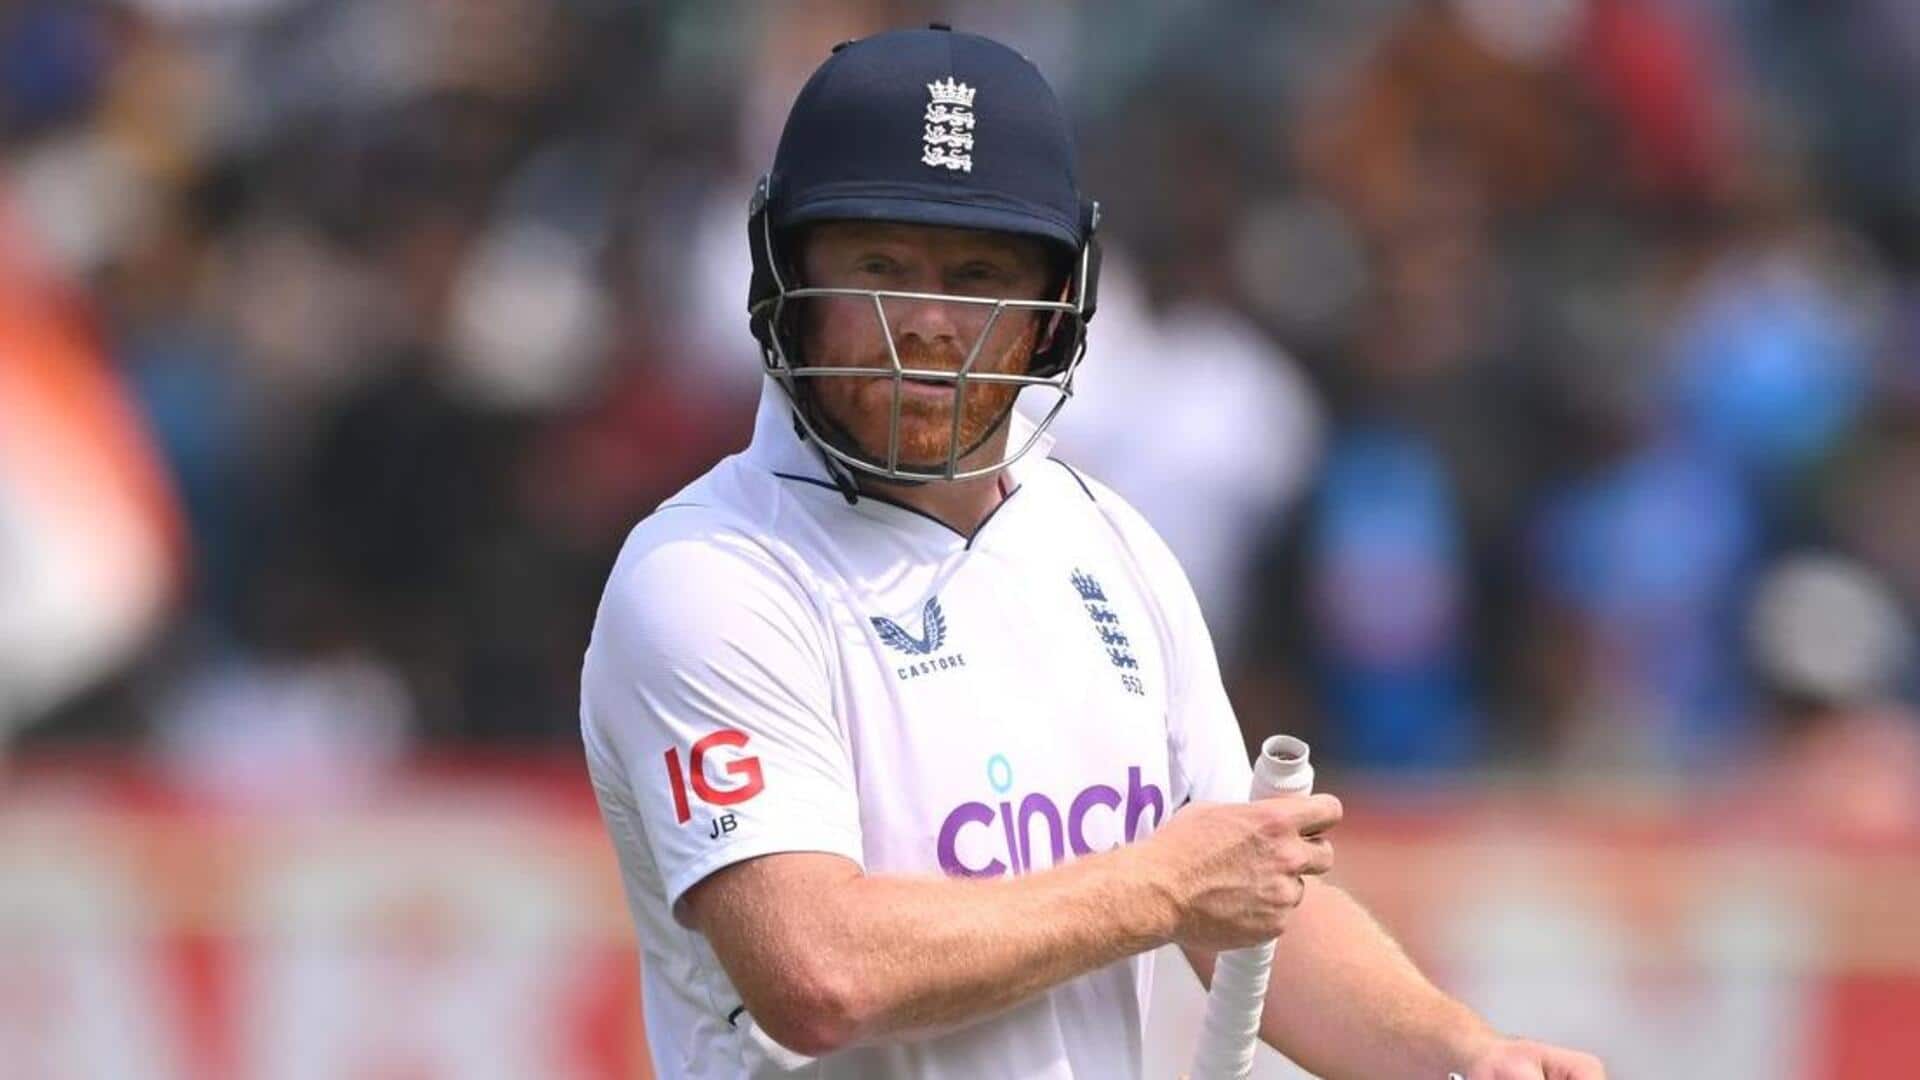 वेस्टइंडीज के खिलाफ टेस्ट सीरीज के लिए इंग्लैंड टीम घोषित, वरिष्ठ खिलाड़ियों को किया बाहर